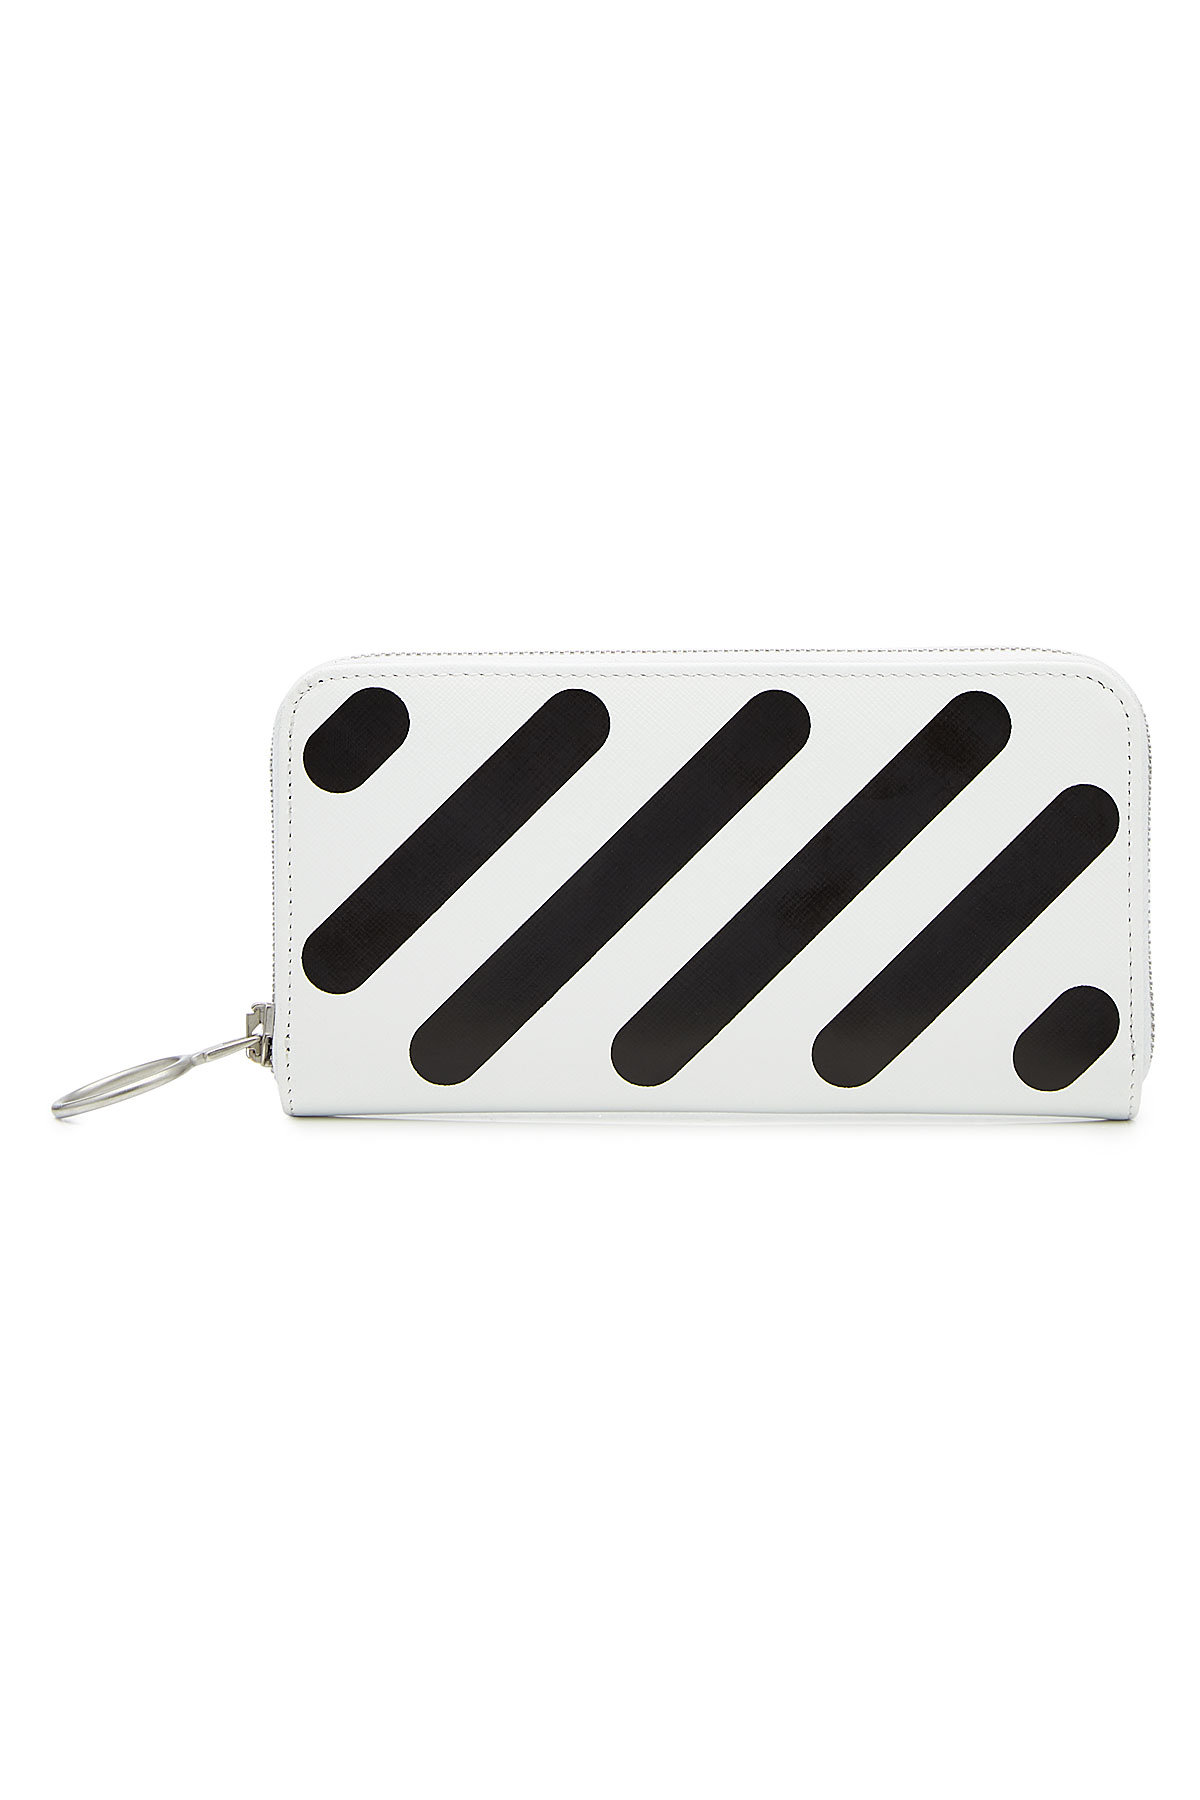 Off-White - Diagonal Leather Wallet